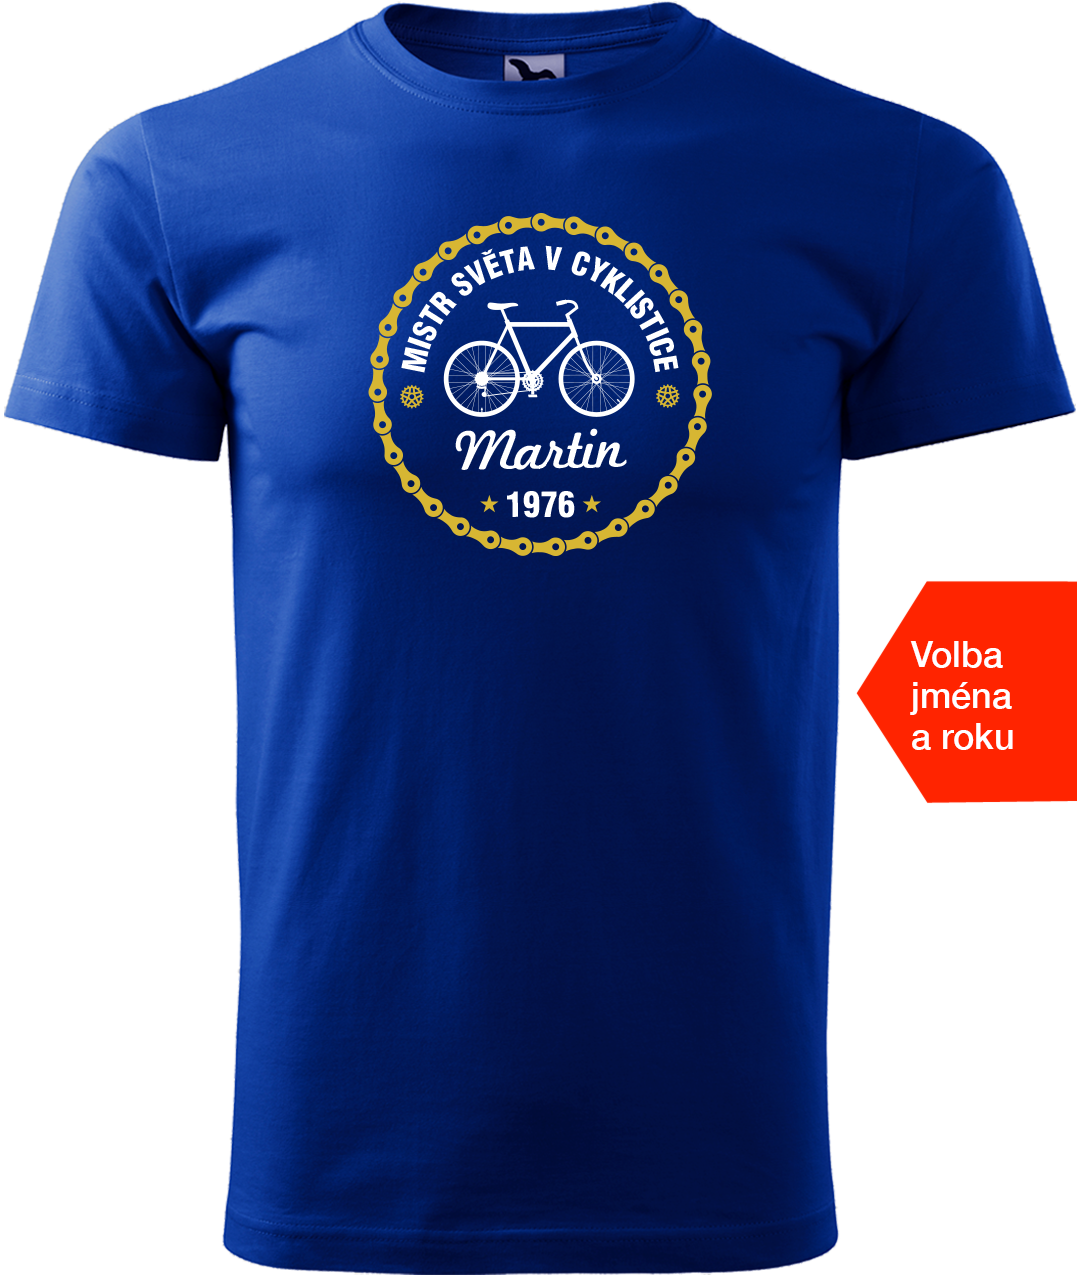 Pánské tričko pro cyklistu s věkem/rokem narození - Mistr světa v cyklistice Velikost: L, Barva: Královská modrá (05)